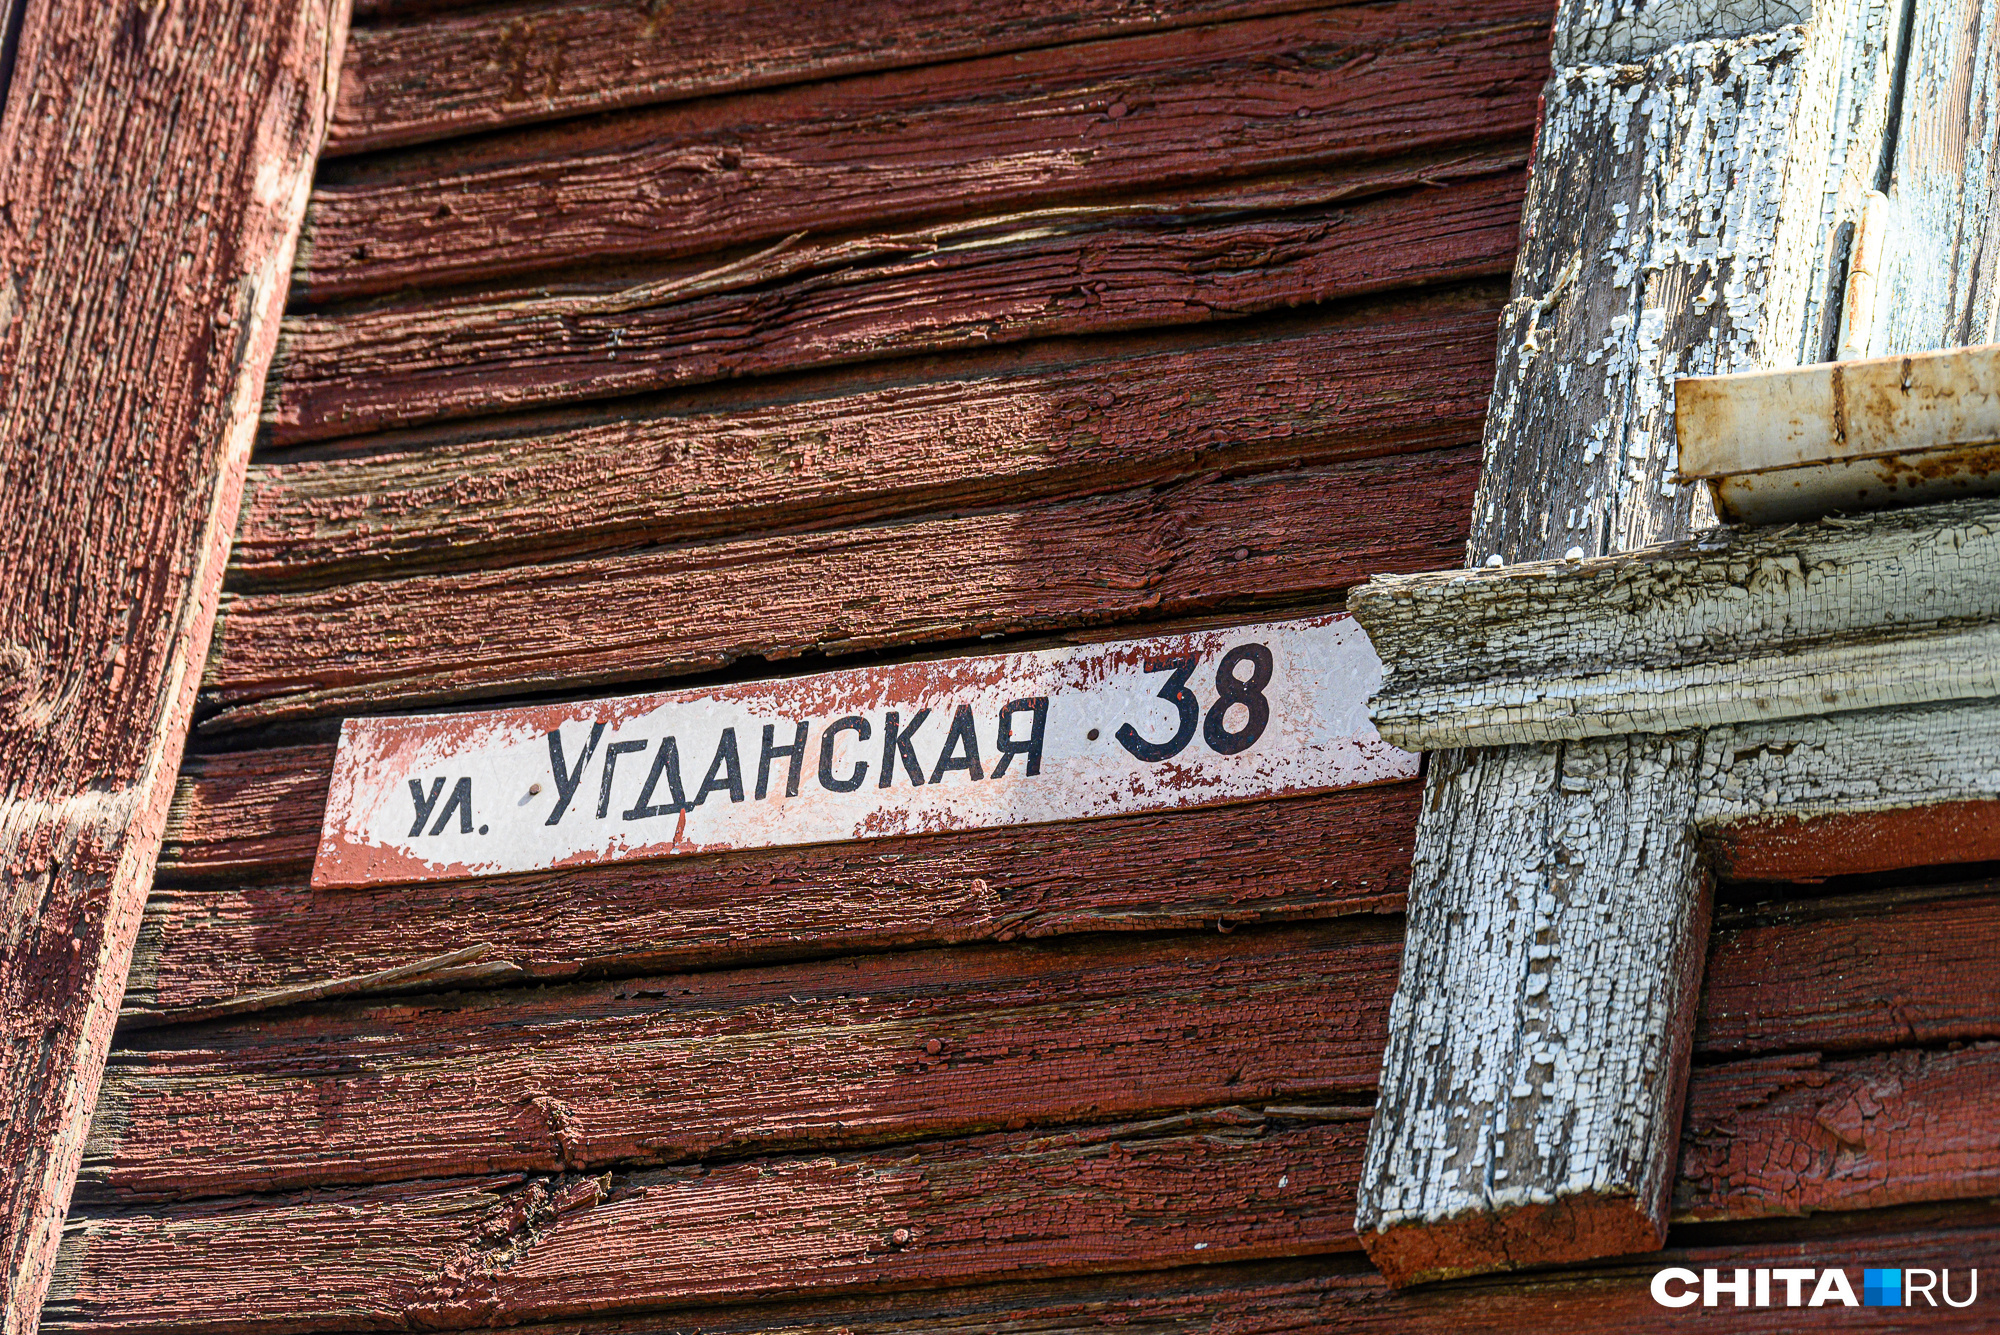 Раньше дом принадлежал улице Угданской